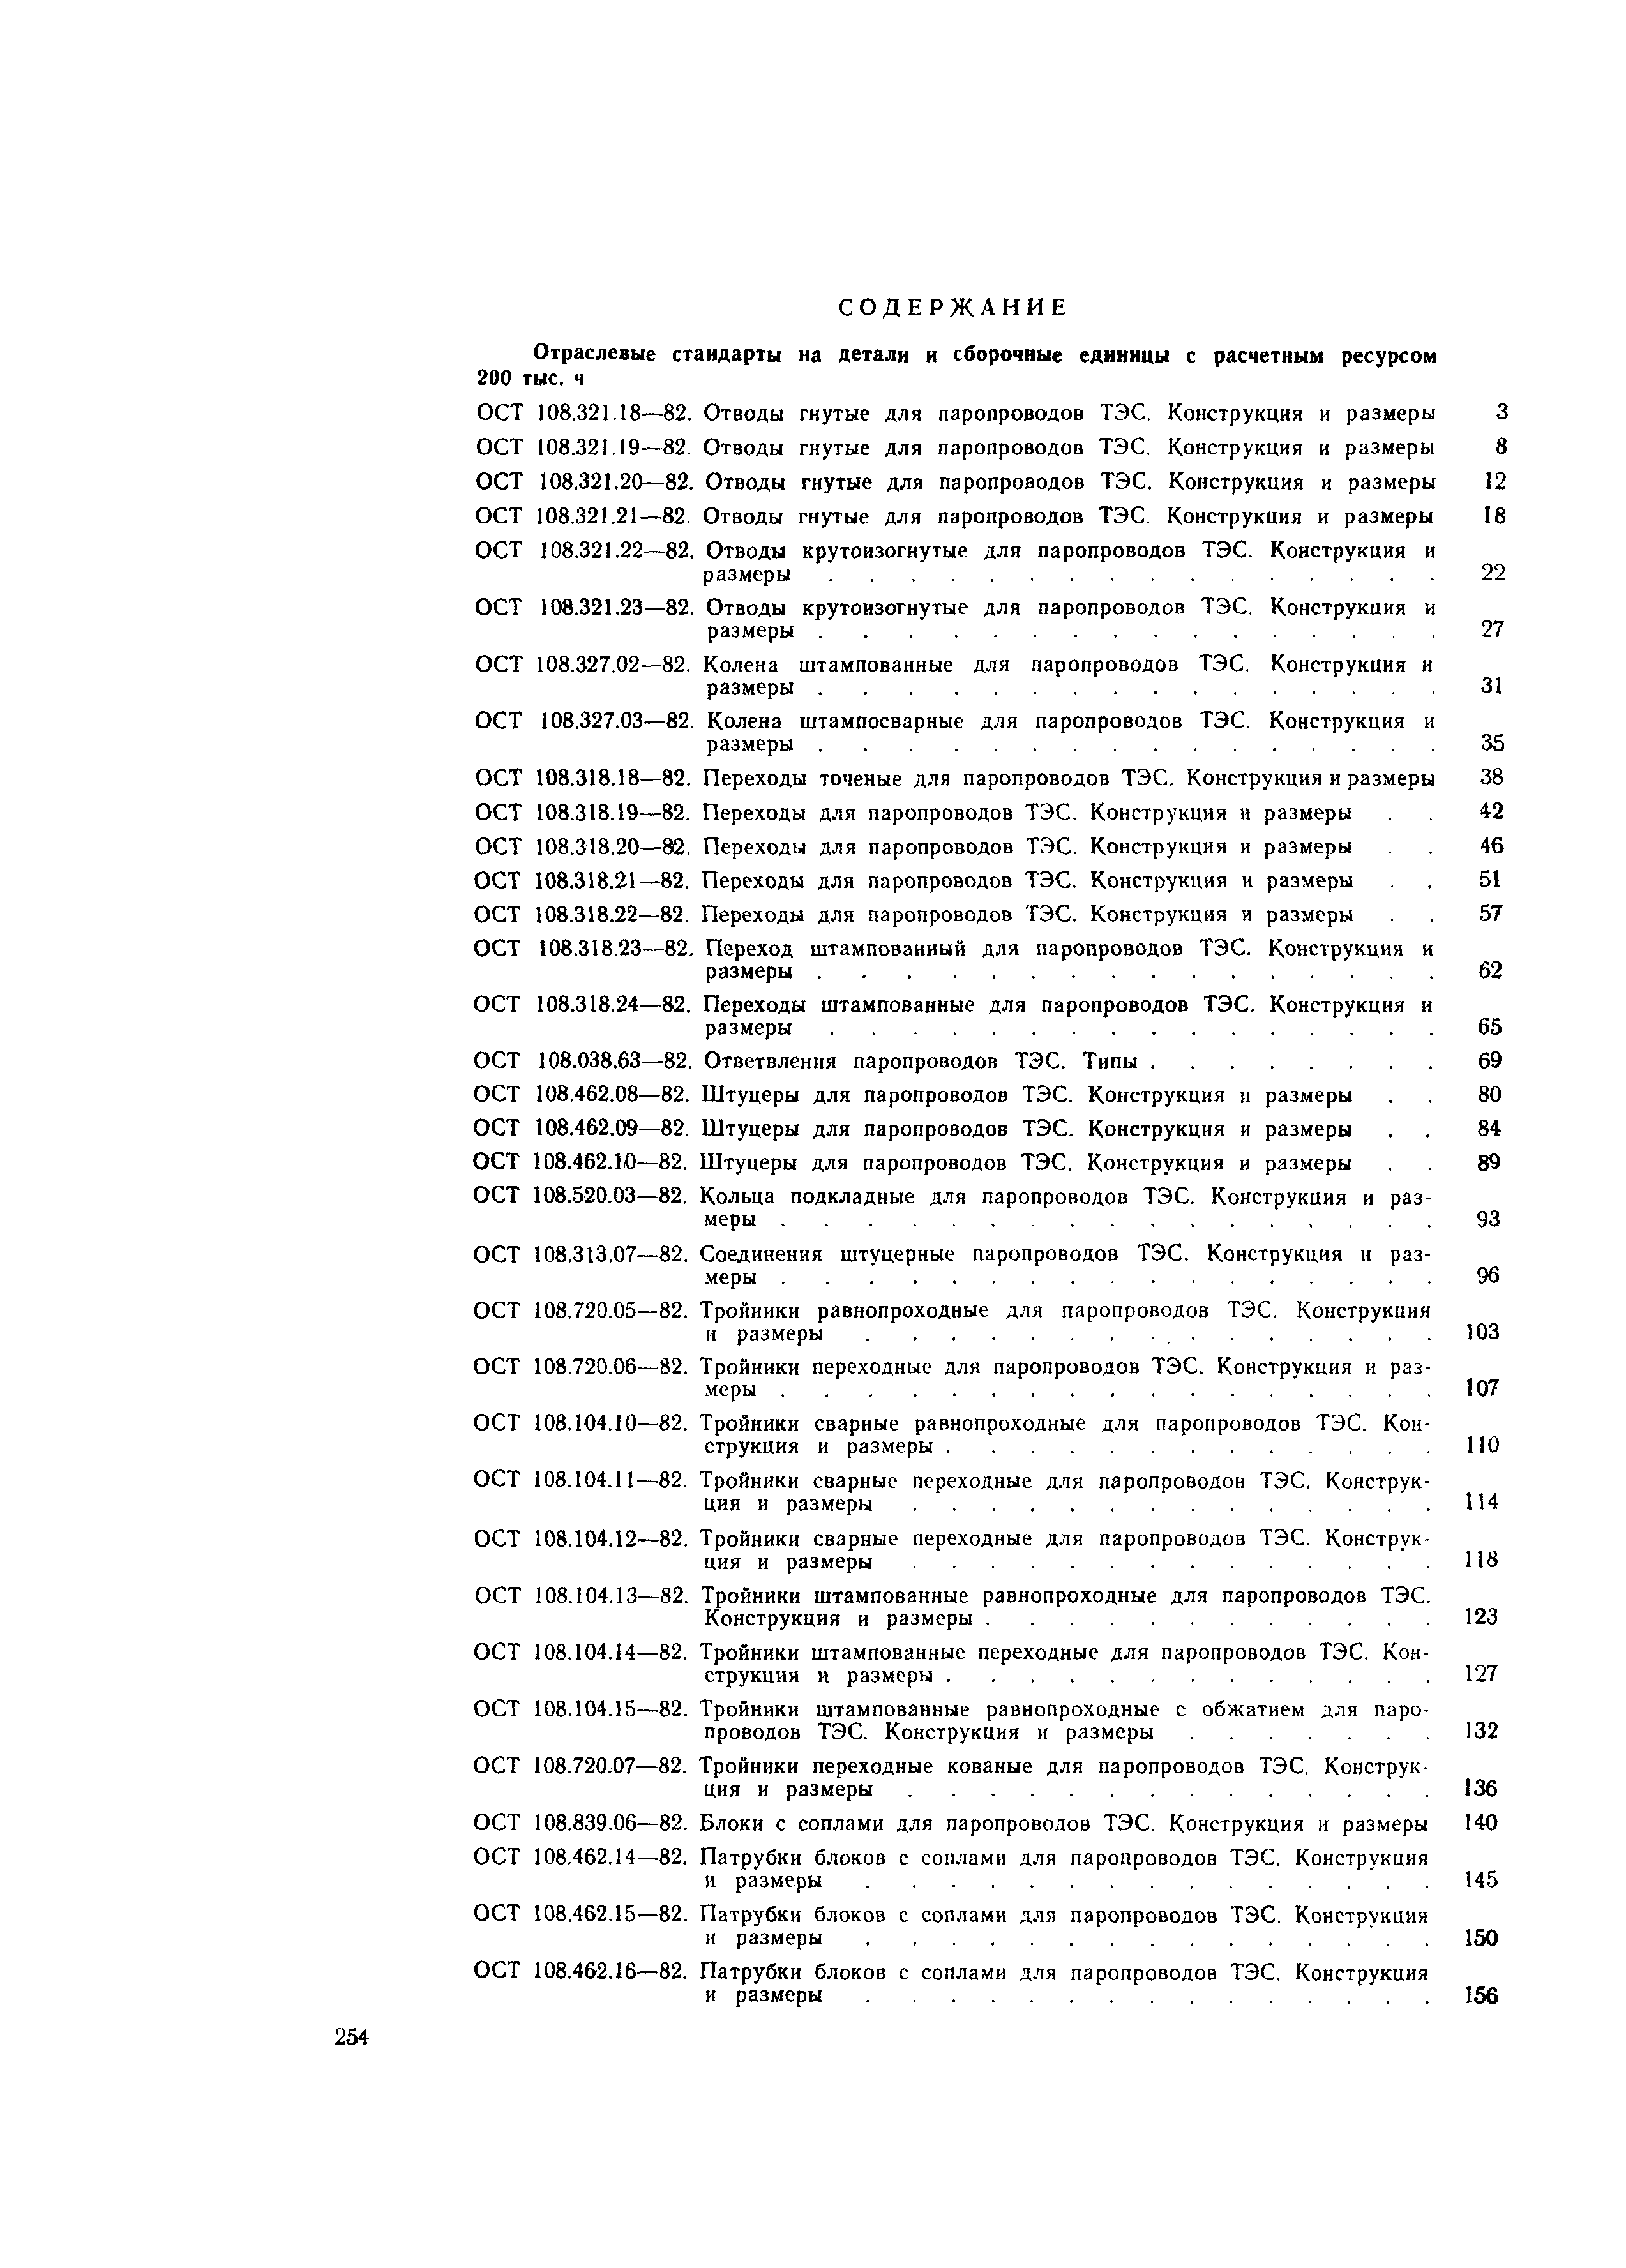 ОСТ 108.318.18-82